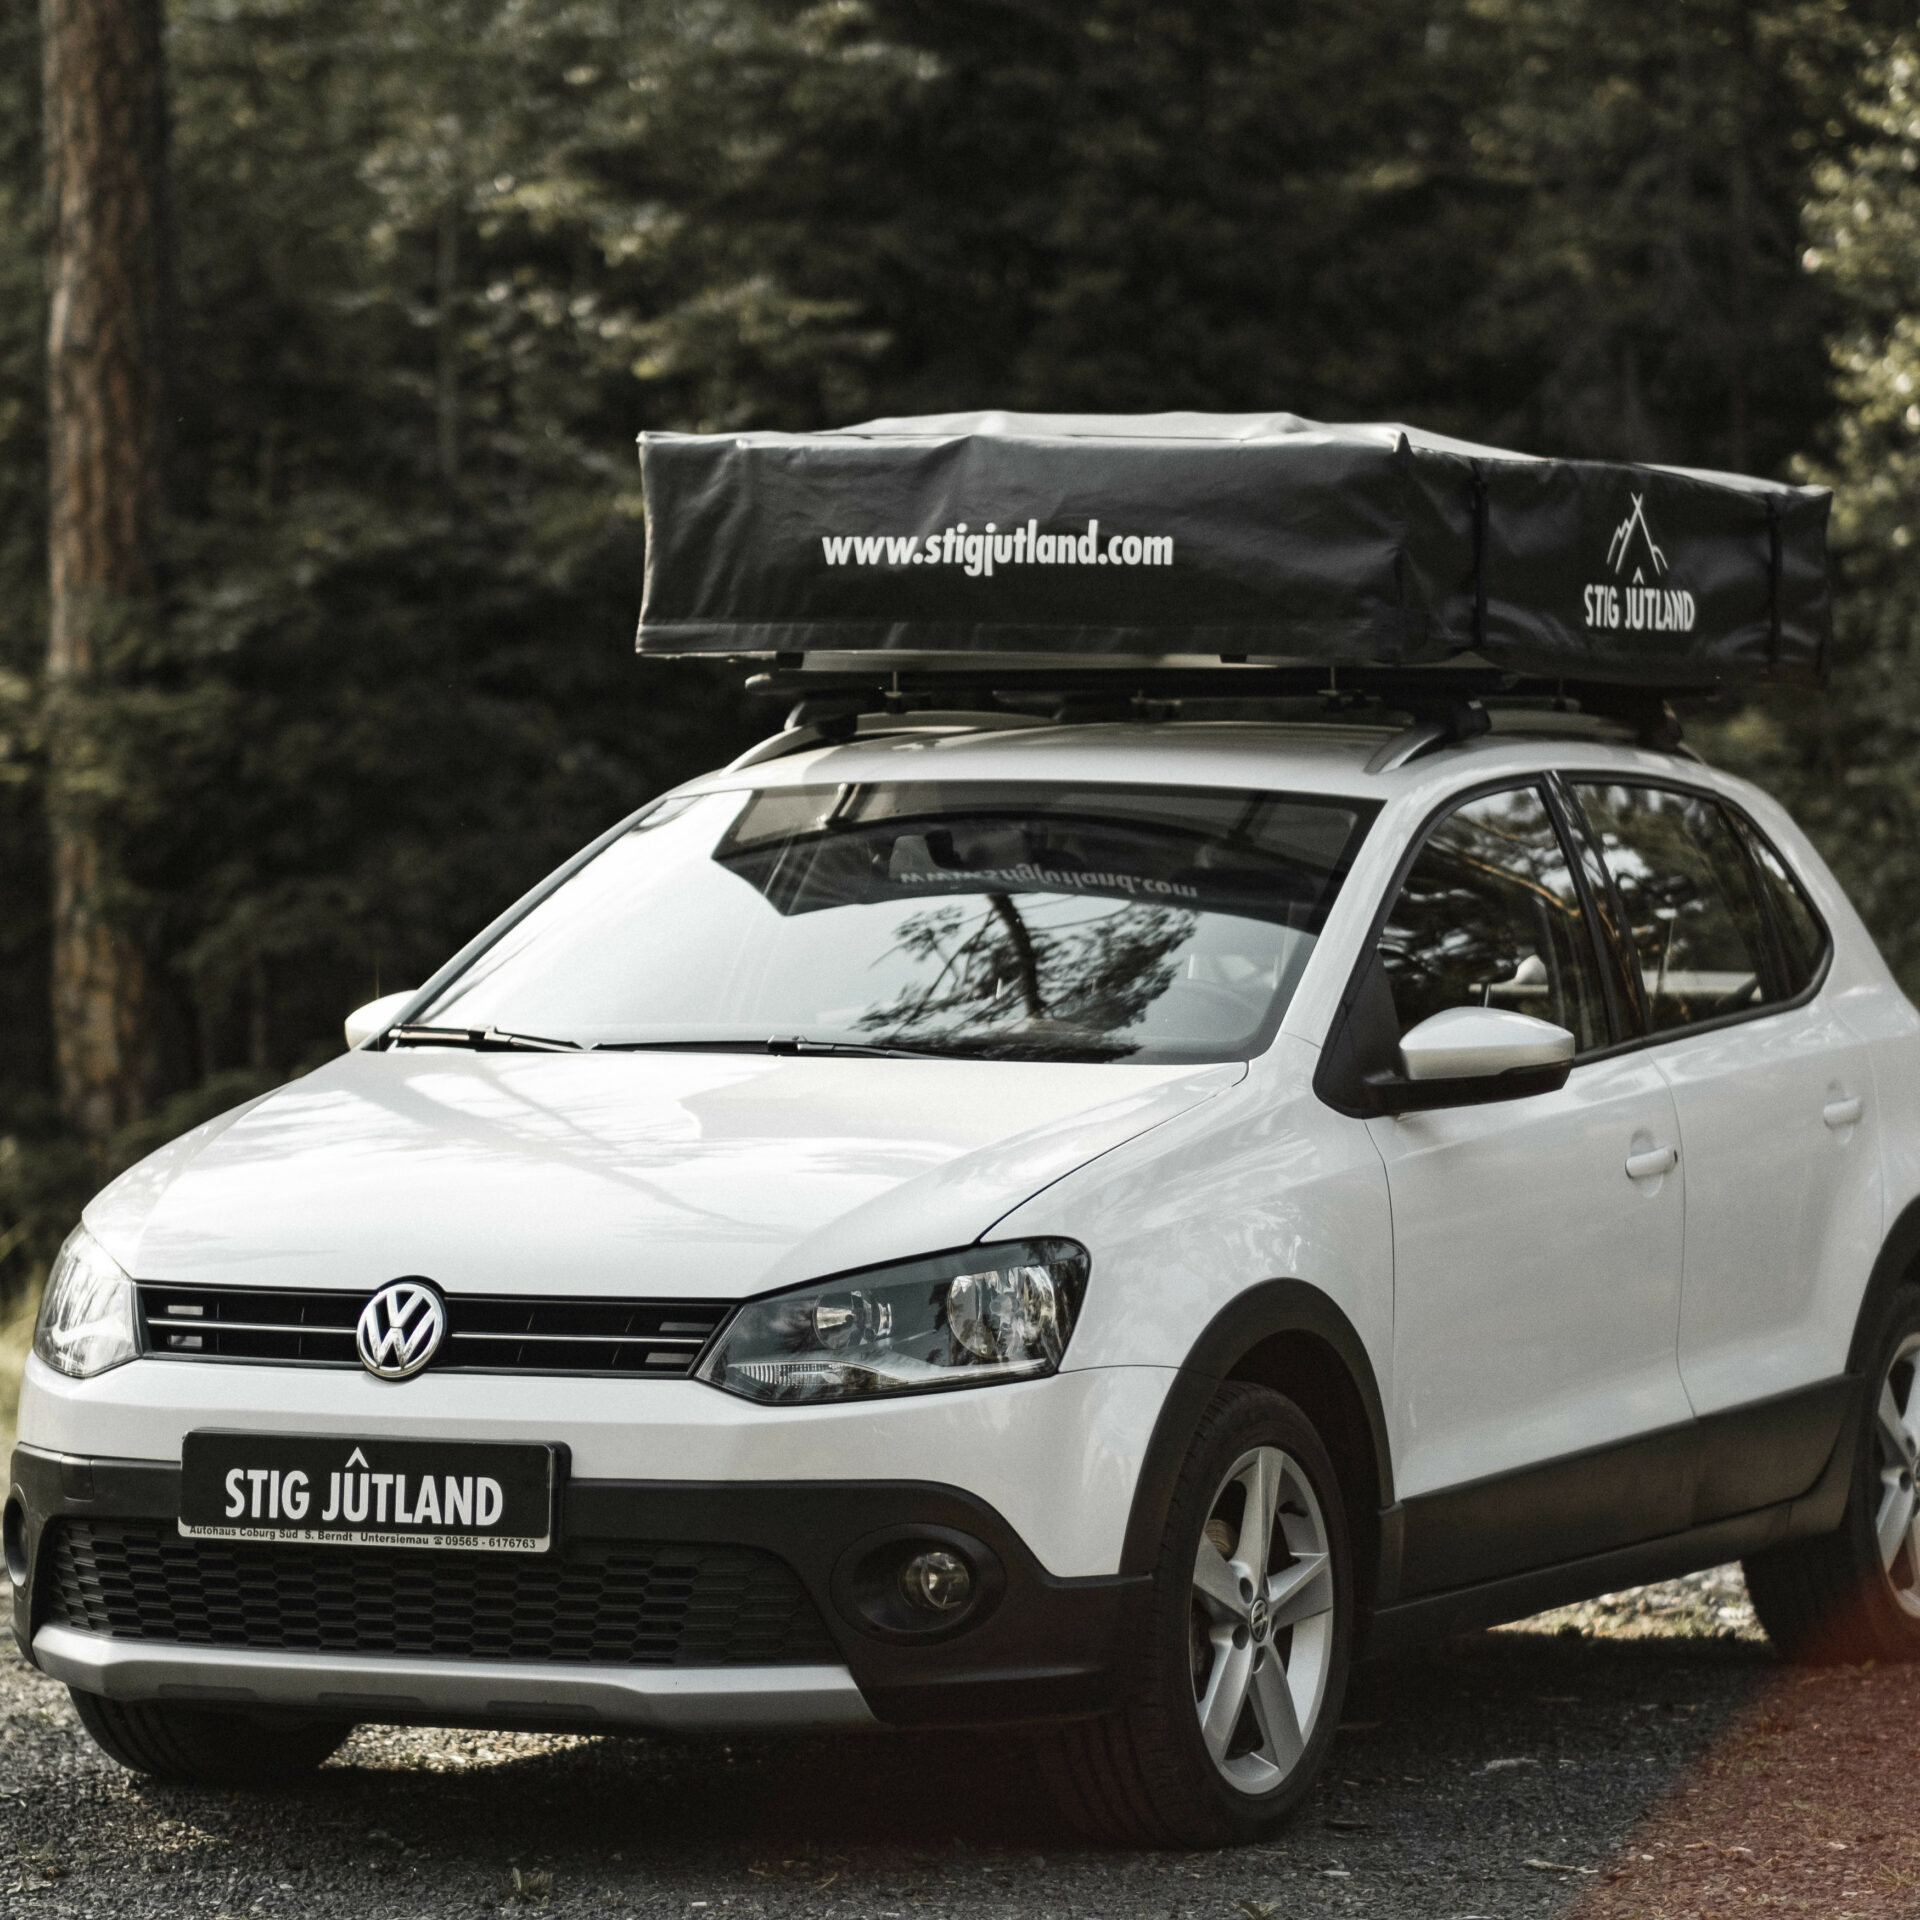 STIG JÛTLAND FØLD 140 Dachzelt auf VW Polo online kaufen oder mieten